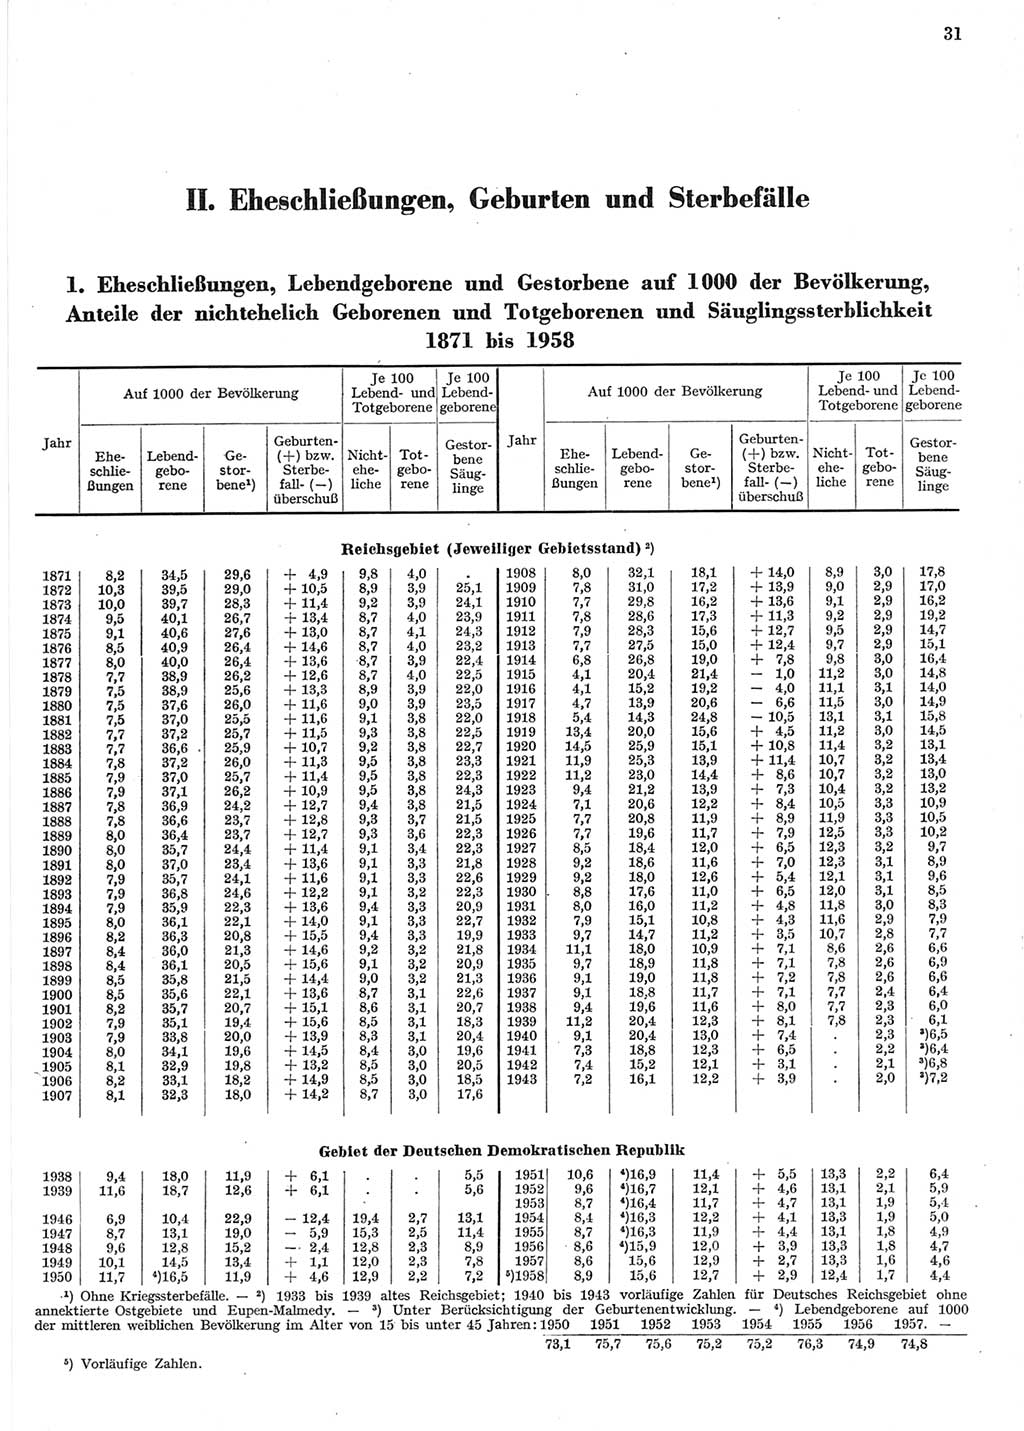 Statistisches Jahrbuch der Deutschen Demokratischen Republik (DDR) 1958, Seite 31 (Stat. Jb. DDR 1958, S. 31)